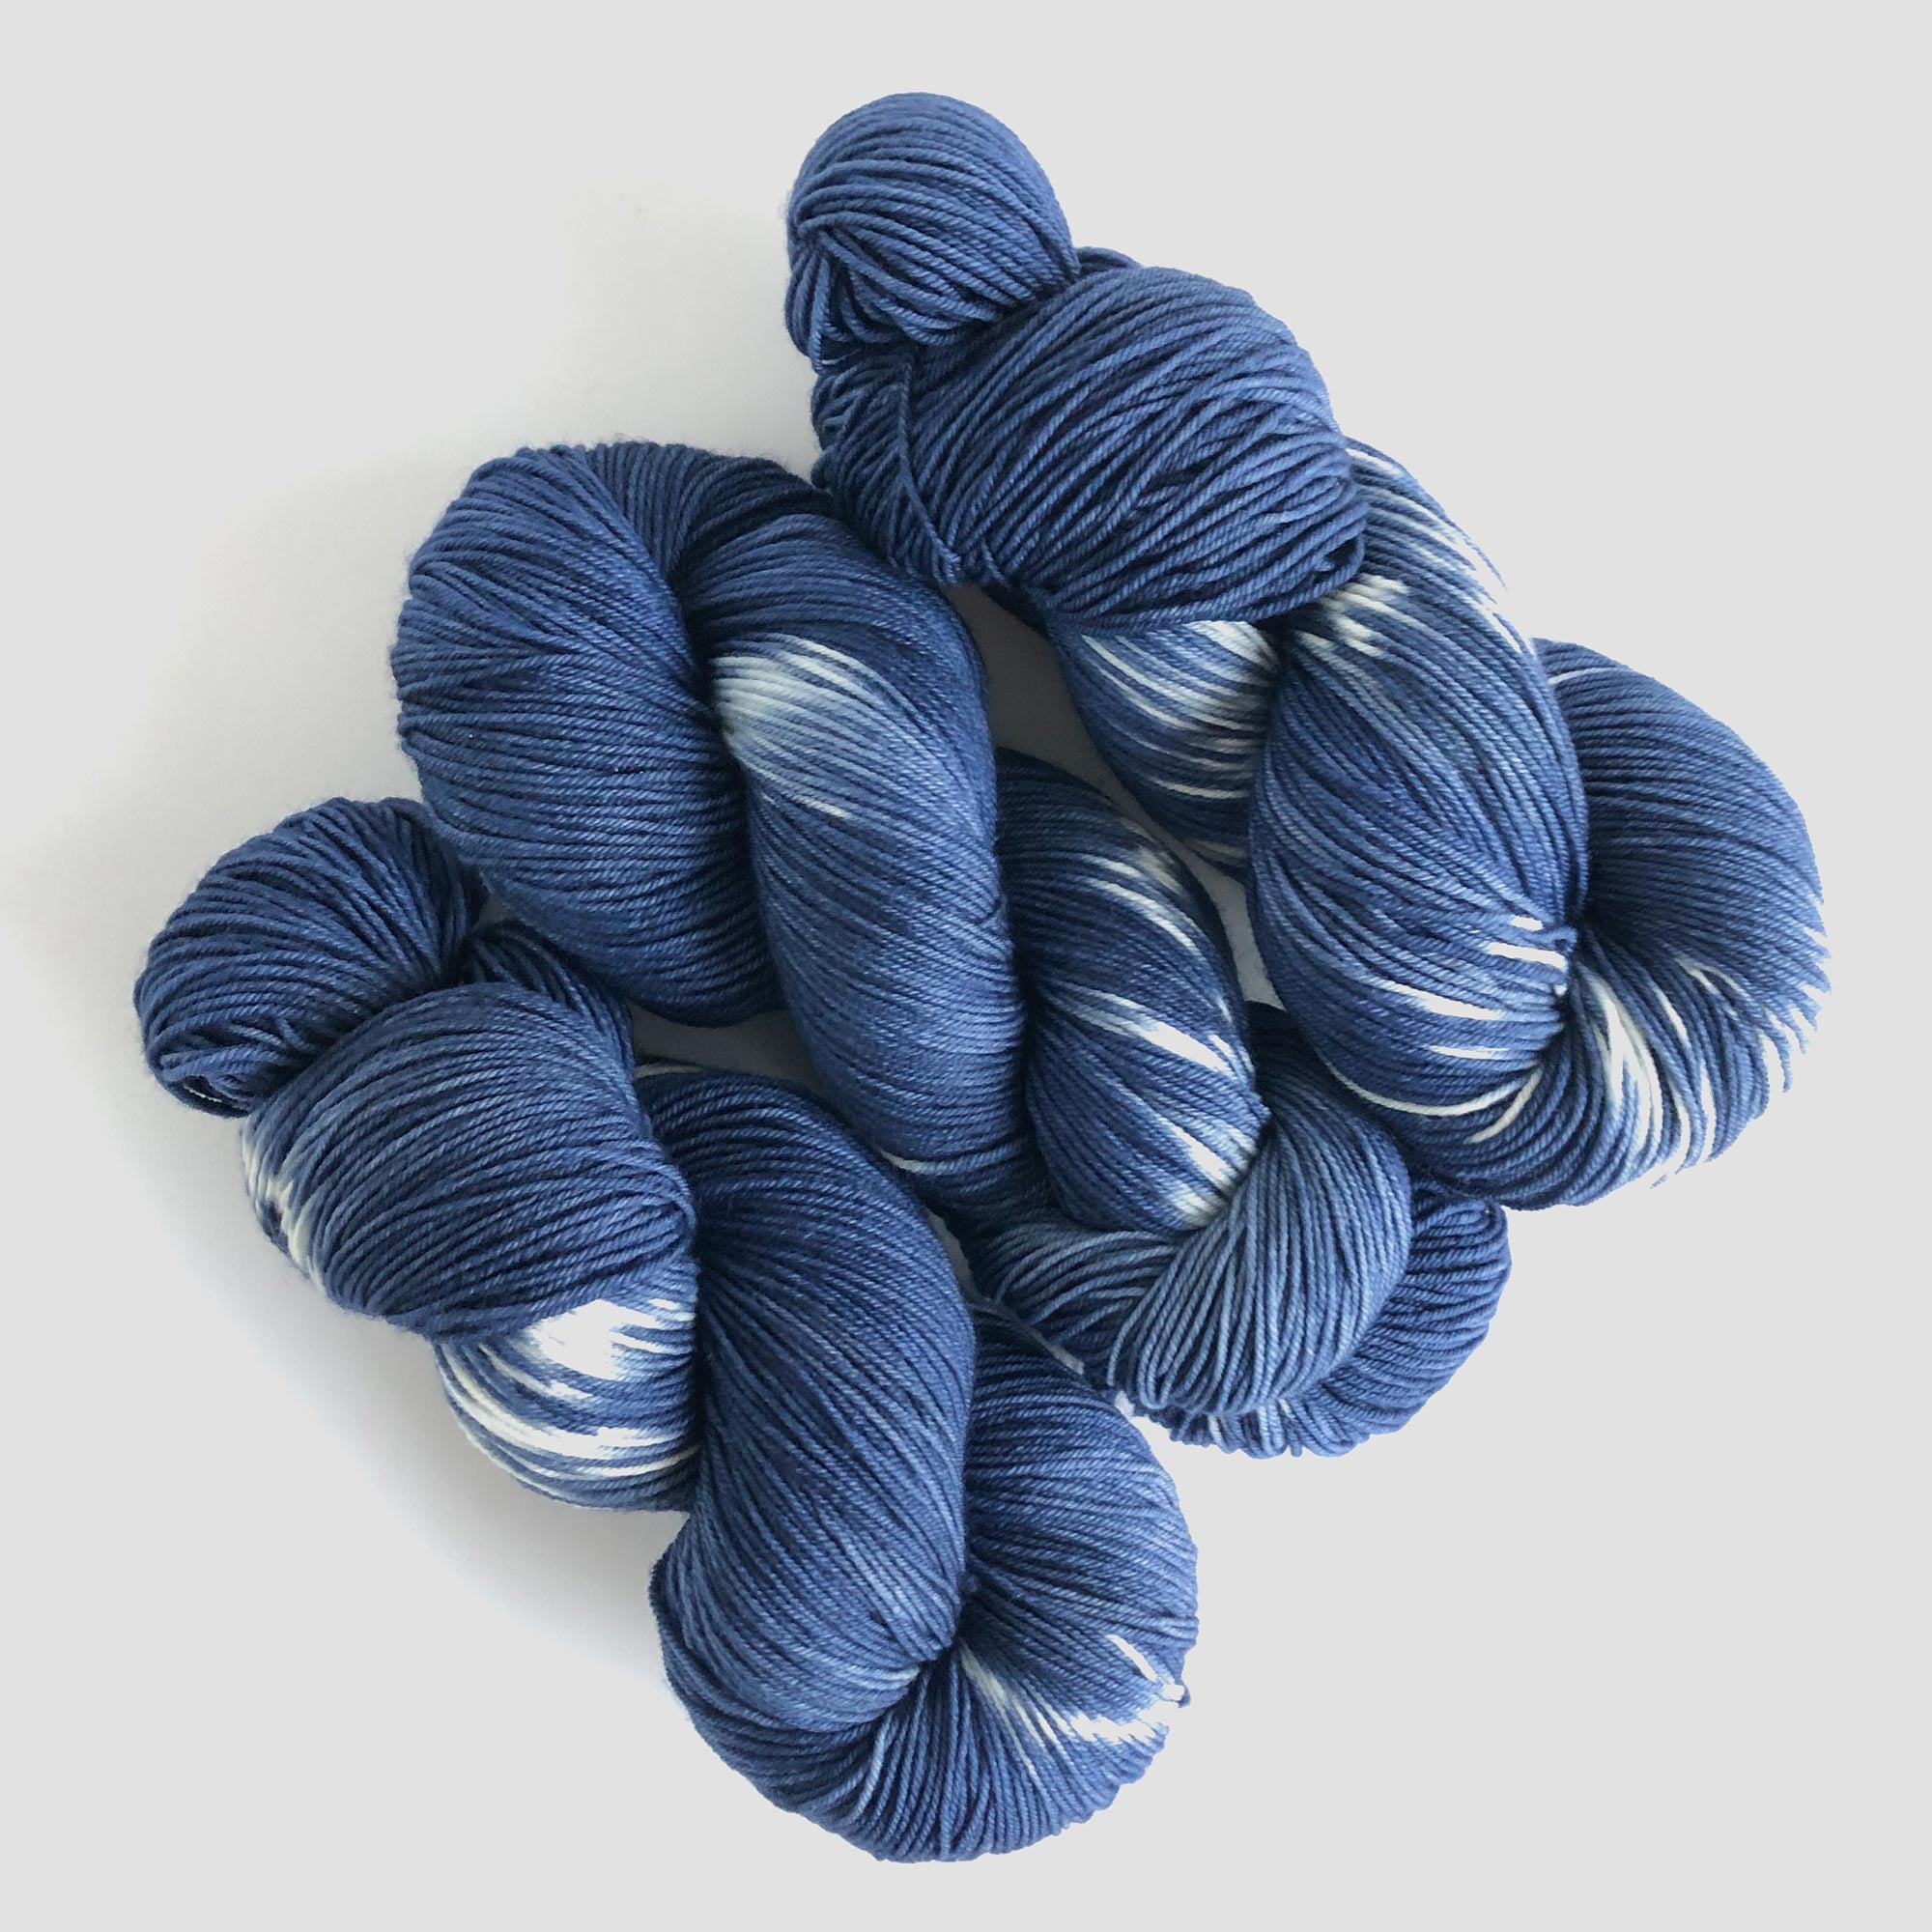 Hand-Dyed Yarn - Indigo Blue SHIBORI  Global Backyard – Global Backyard  Industries